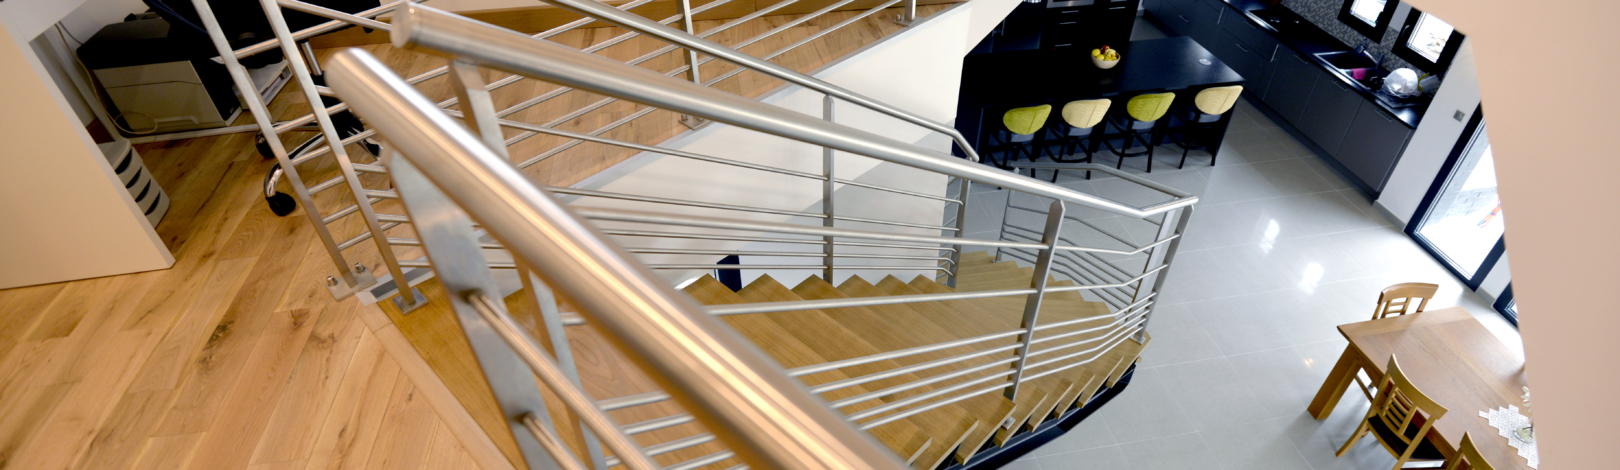 vue dessus escalier sur mesure escalier droit acier inox et bois